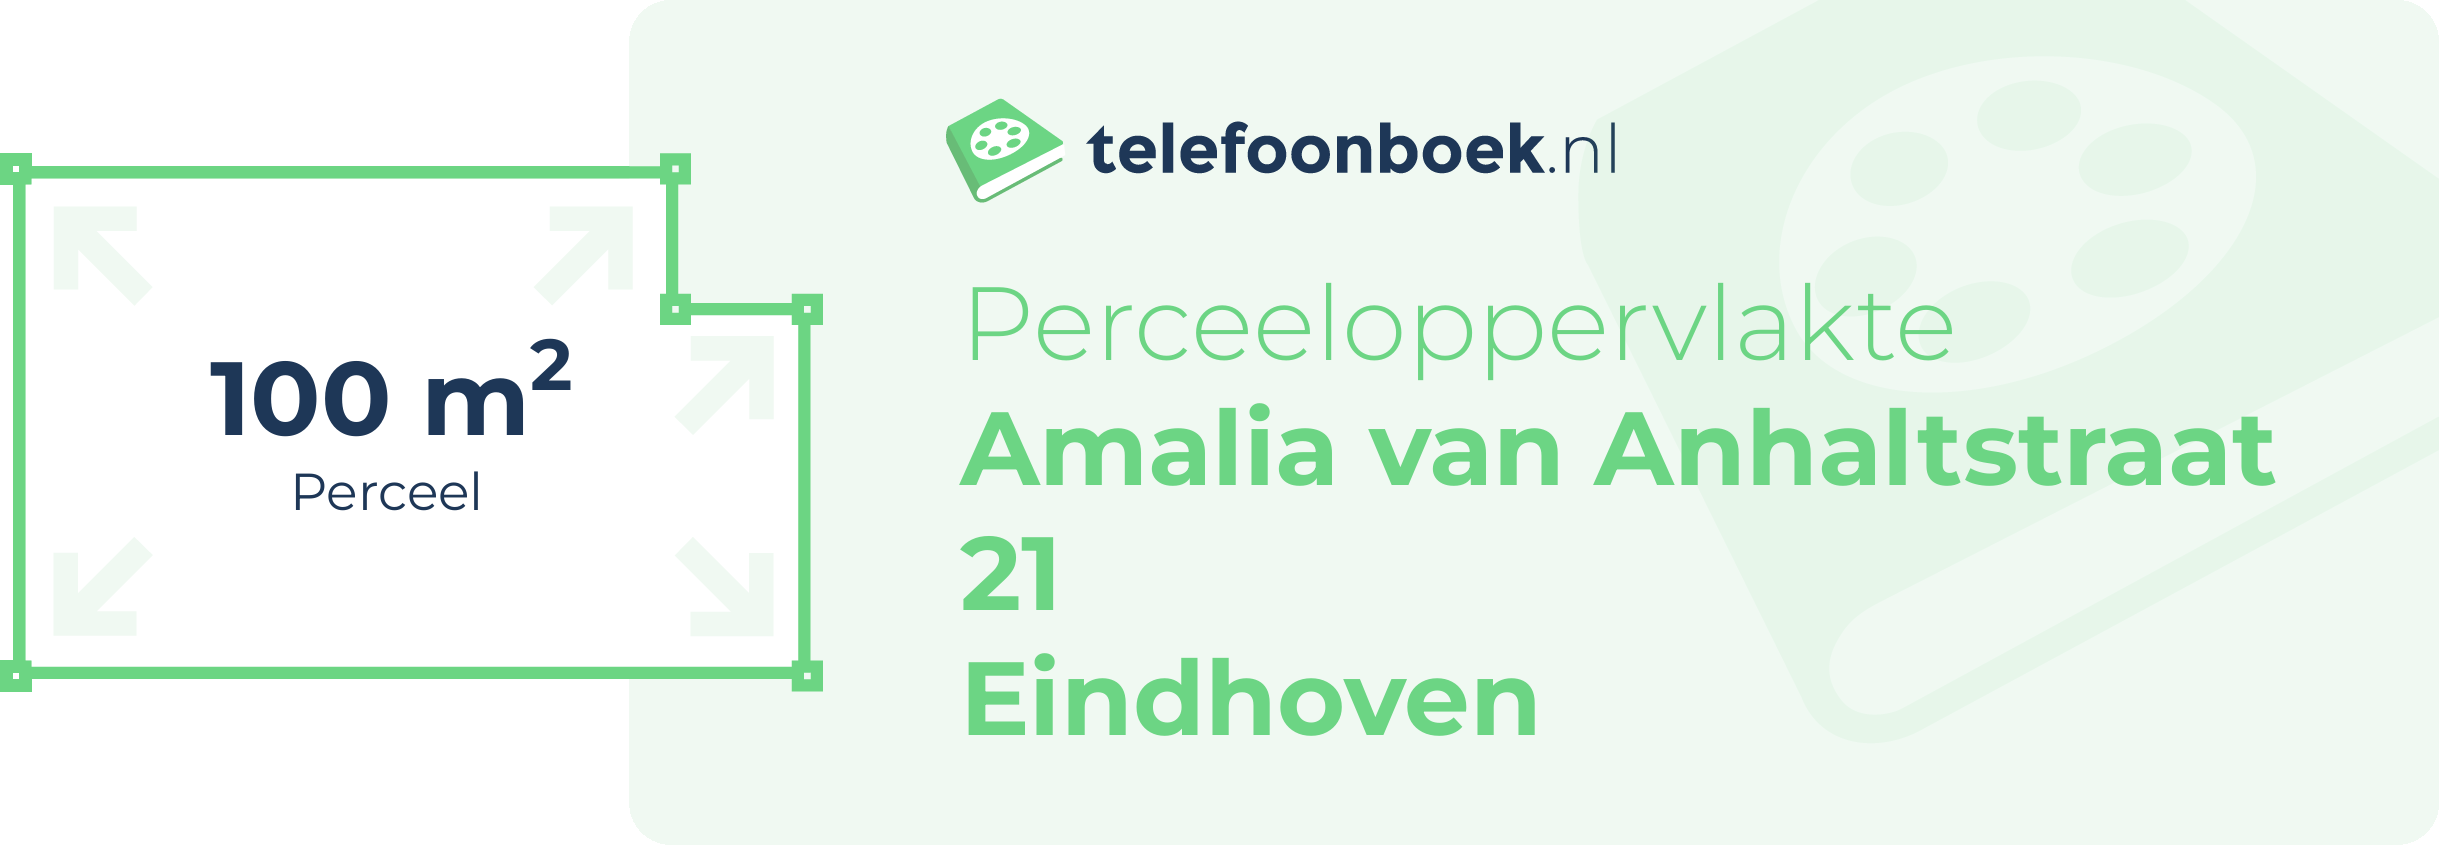 Perceeloppervlakte Amalia Van Anhaltstraat 21 Eindhoven